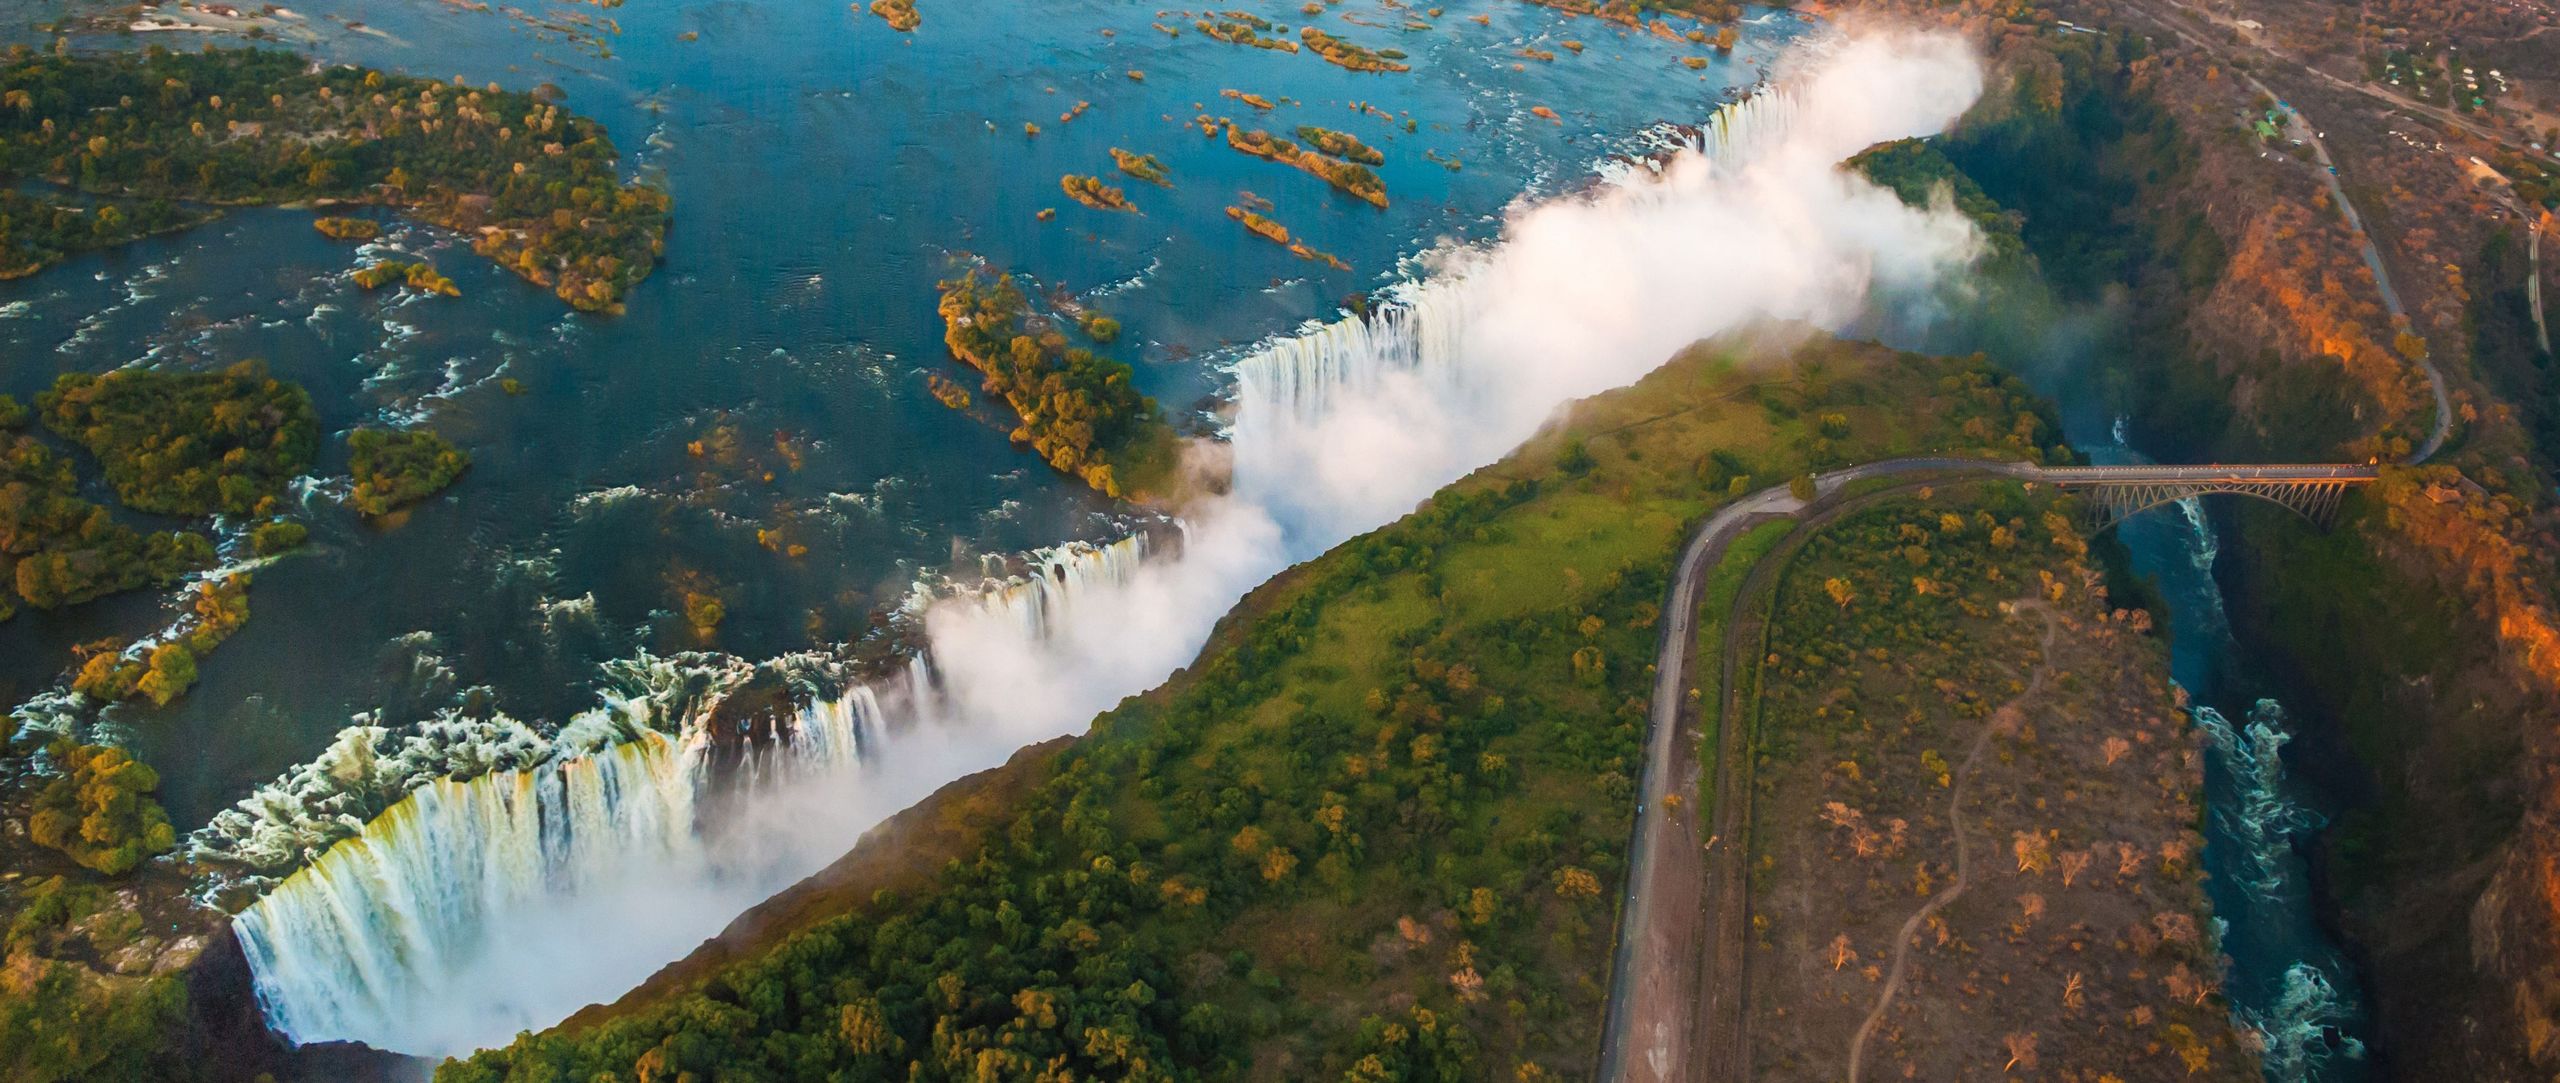 Die Victoria Falls sind das eindrückliche Ziel der geplanten Background Tours-Jubiläumsreise